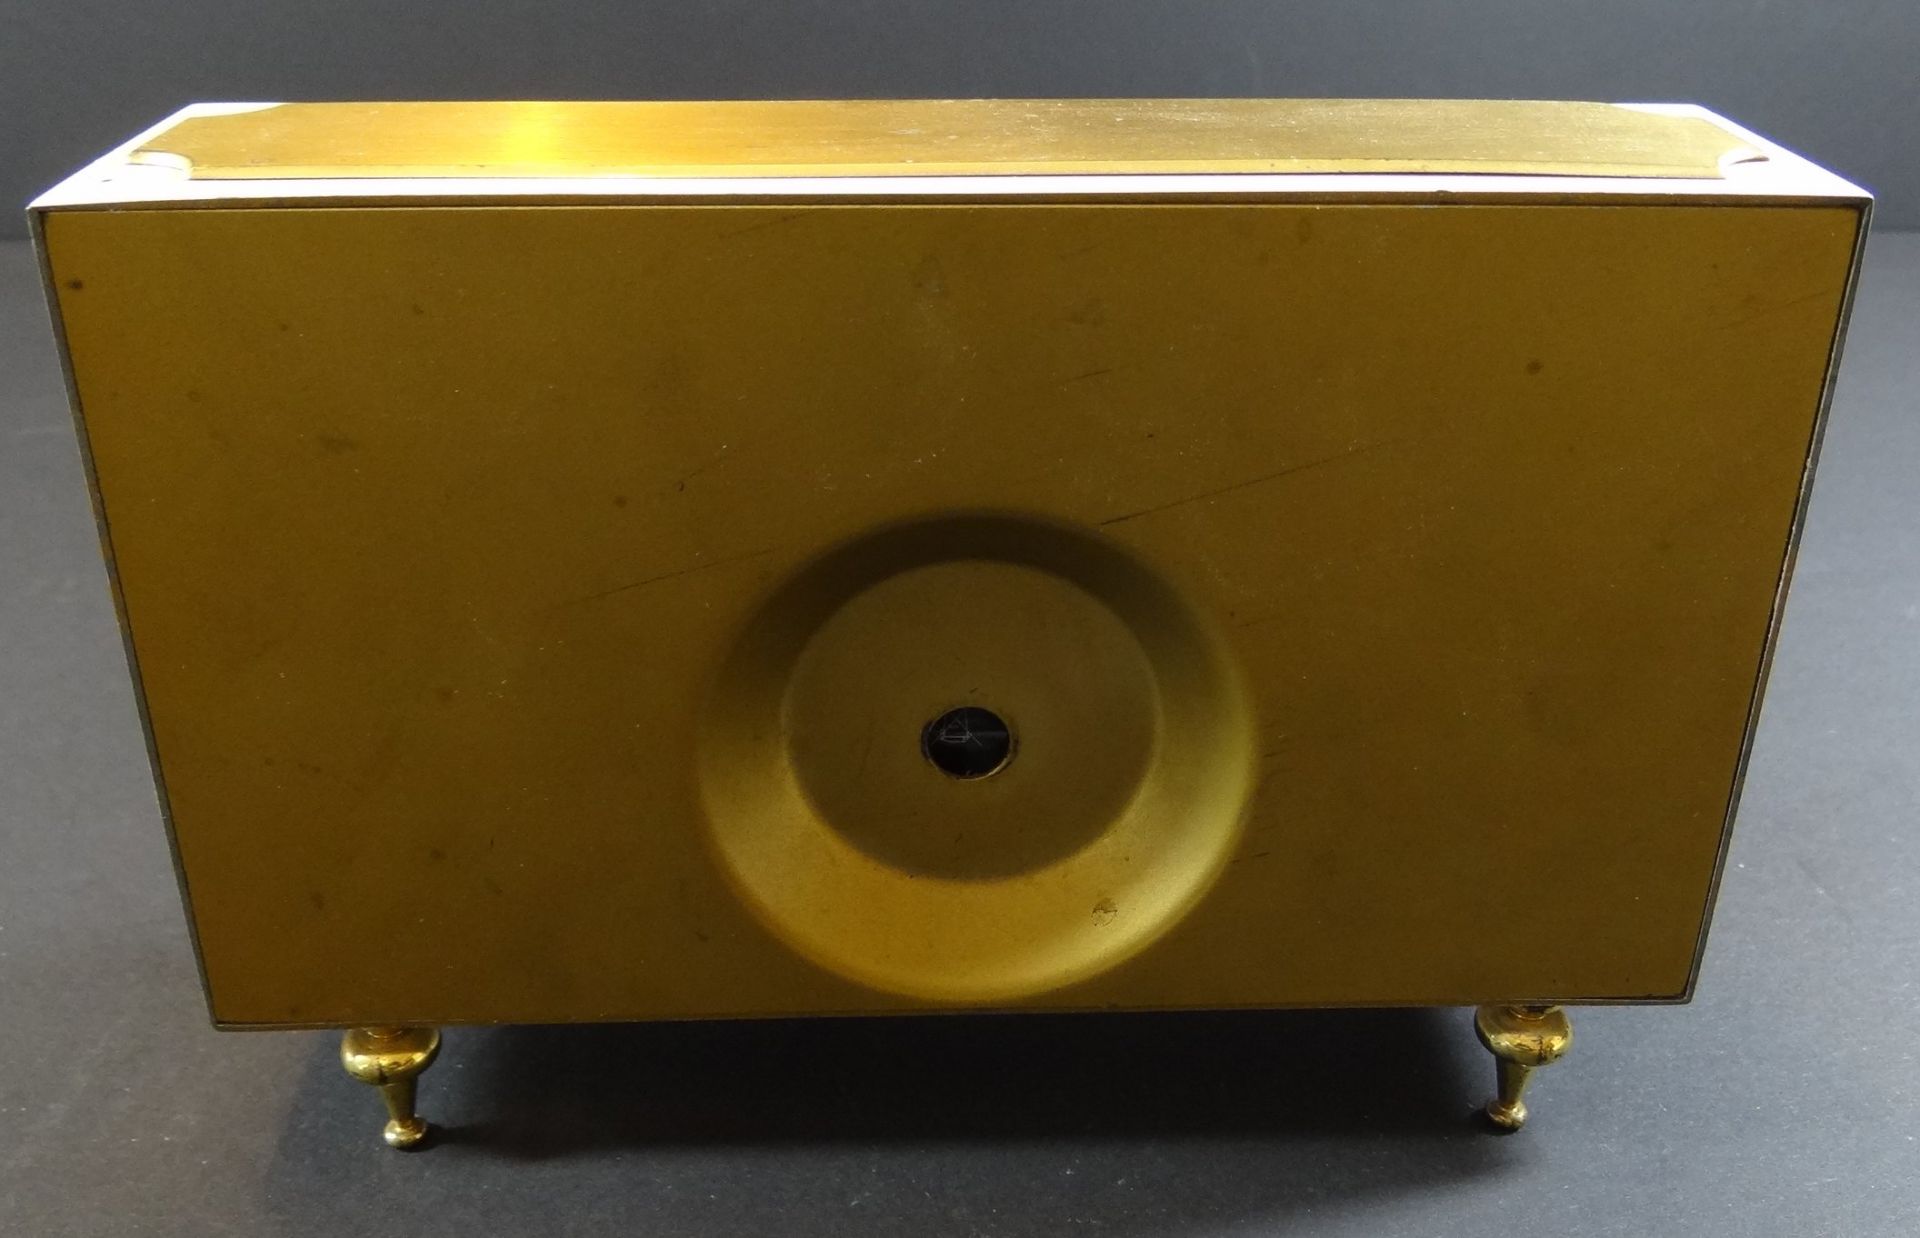 Tischuhr "Kienzle Automatik" Batteriewerk, H-12 cm, B-18 cm - Bild 3 aus 5